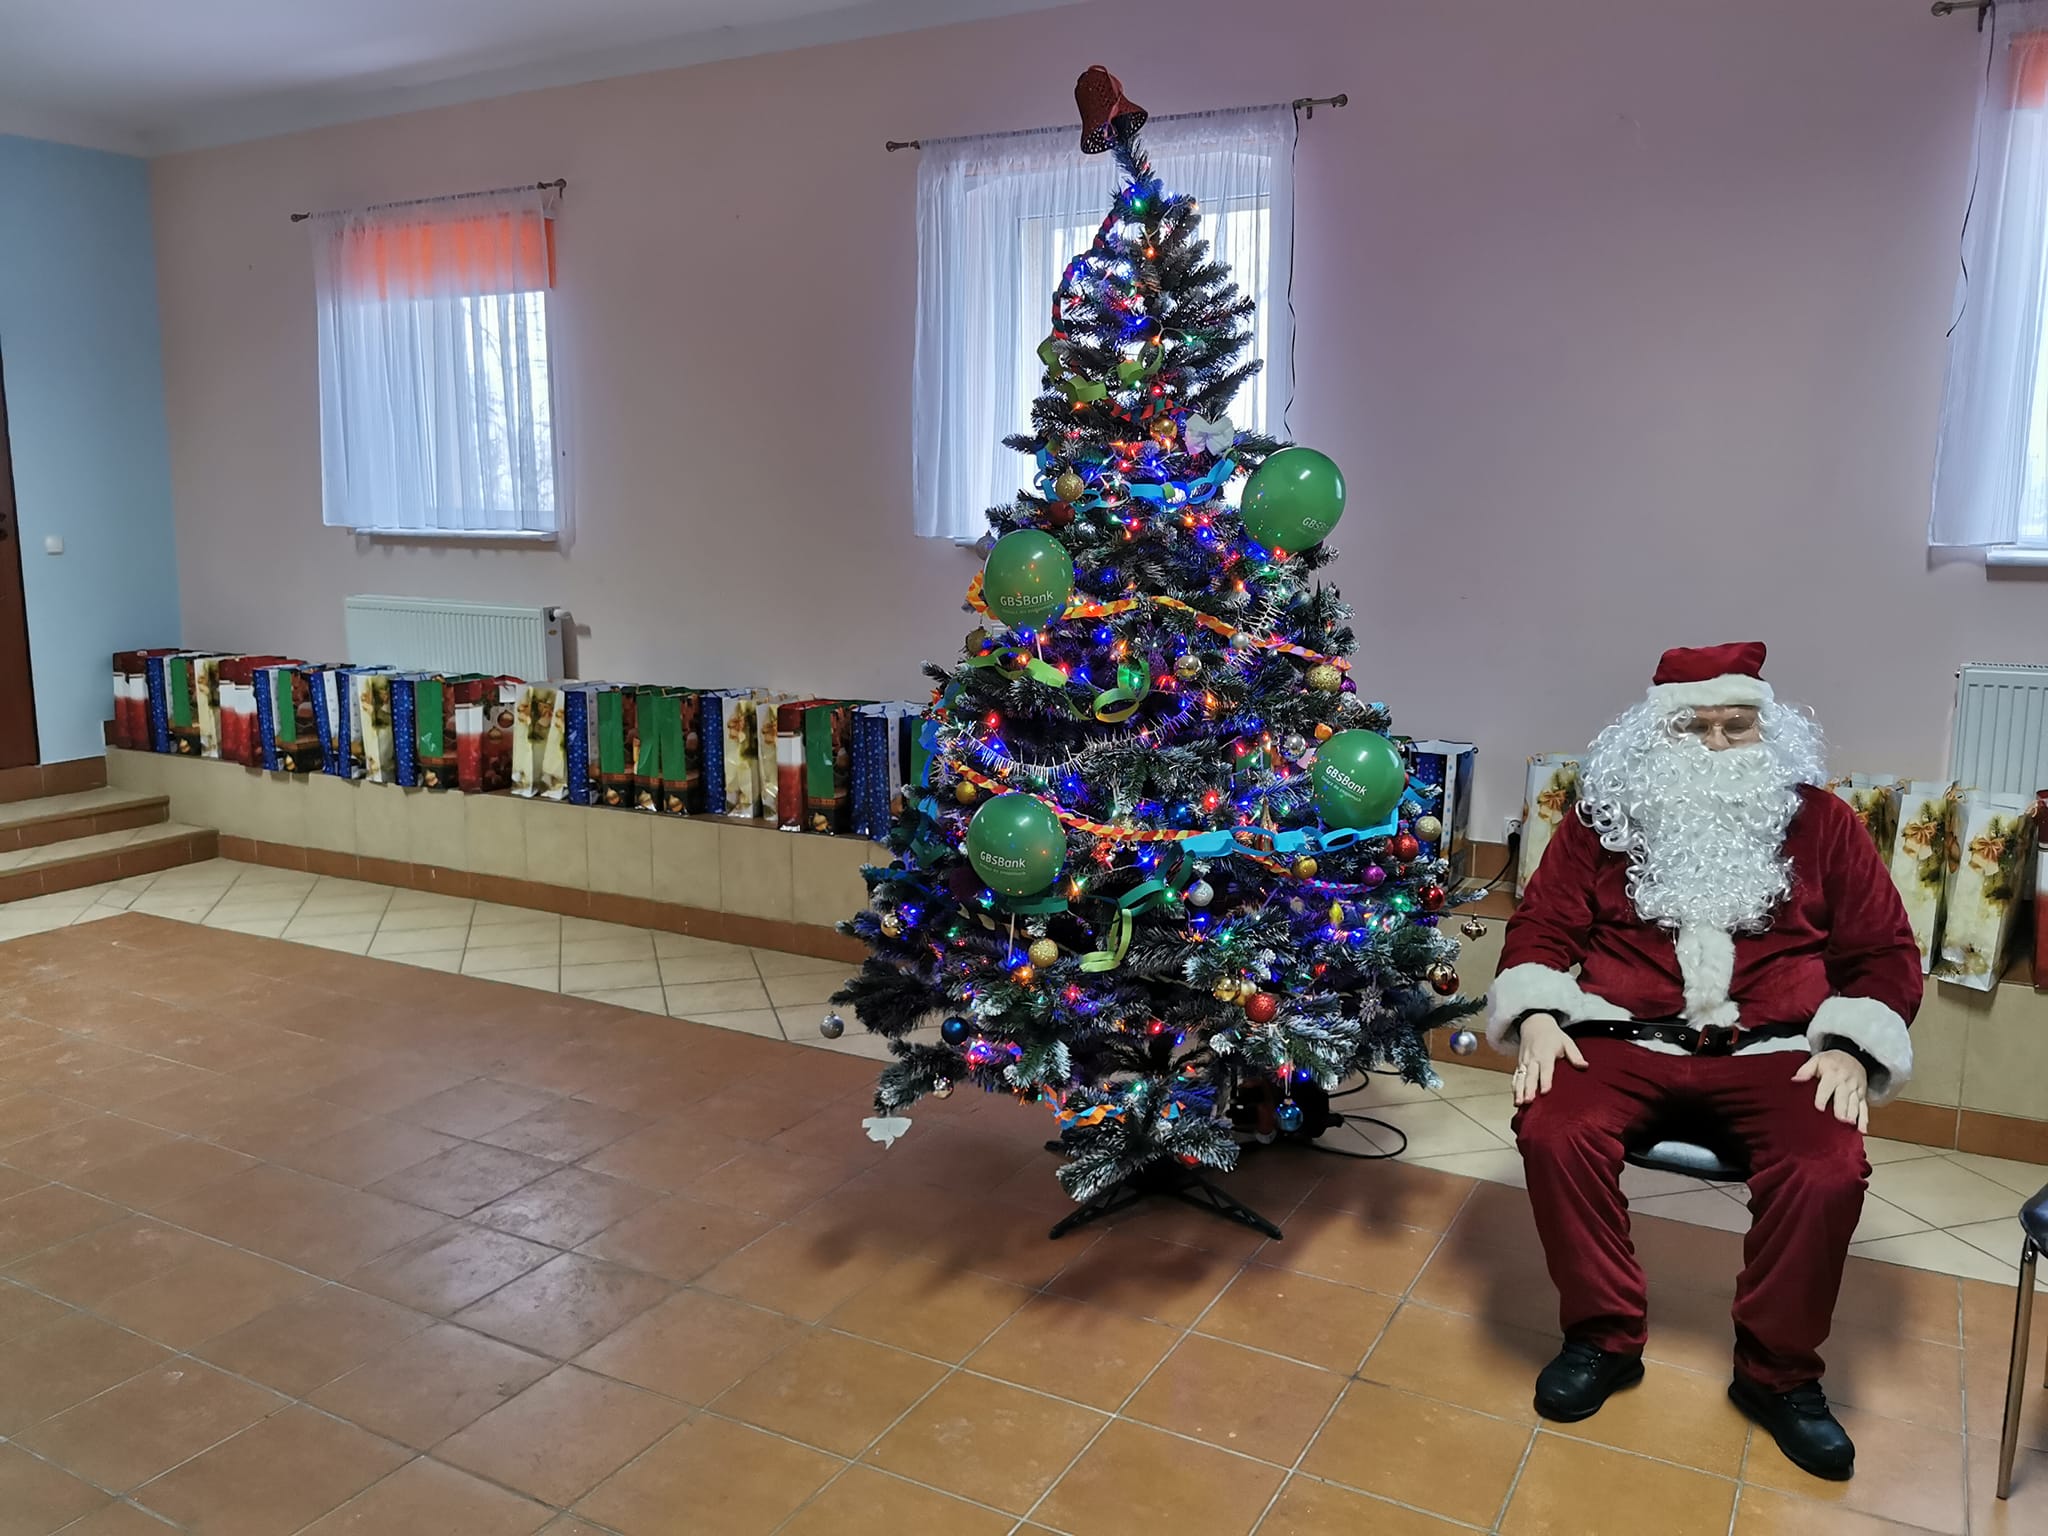 Mikołaj odwiedził dzieci w Jarosławsku - miał dla nich wór prezentów!